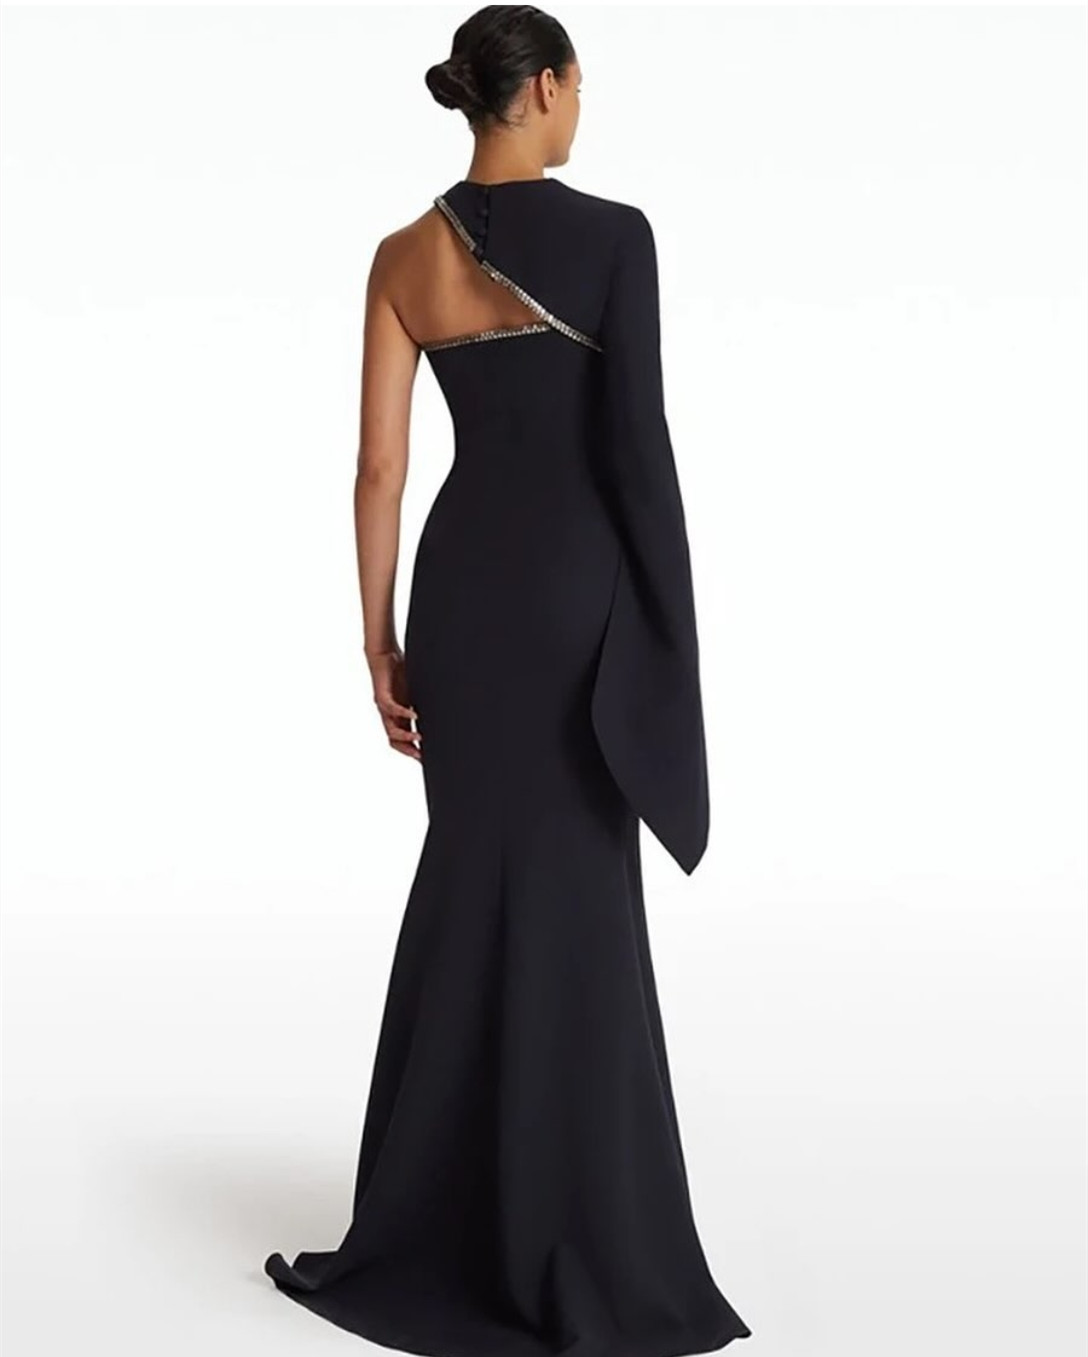 Elegante lange schwarze Perlen-Abendkleider im Meerjungfrau-Stil, aus Krepp, einschulterig, mit Sweep-Zug und Reißverschluss hinten, Ballkleider für Damen